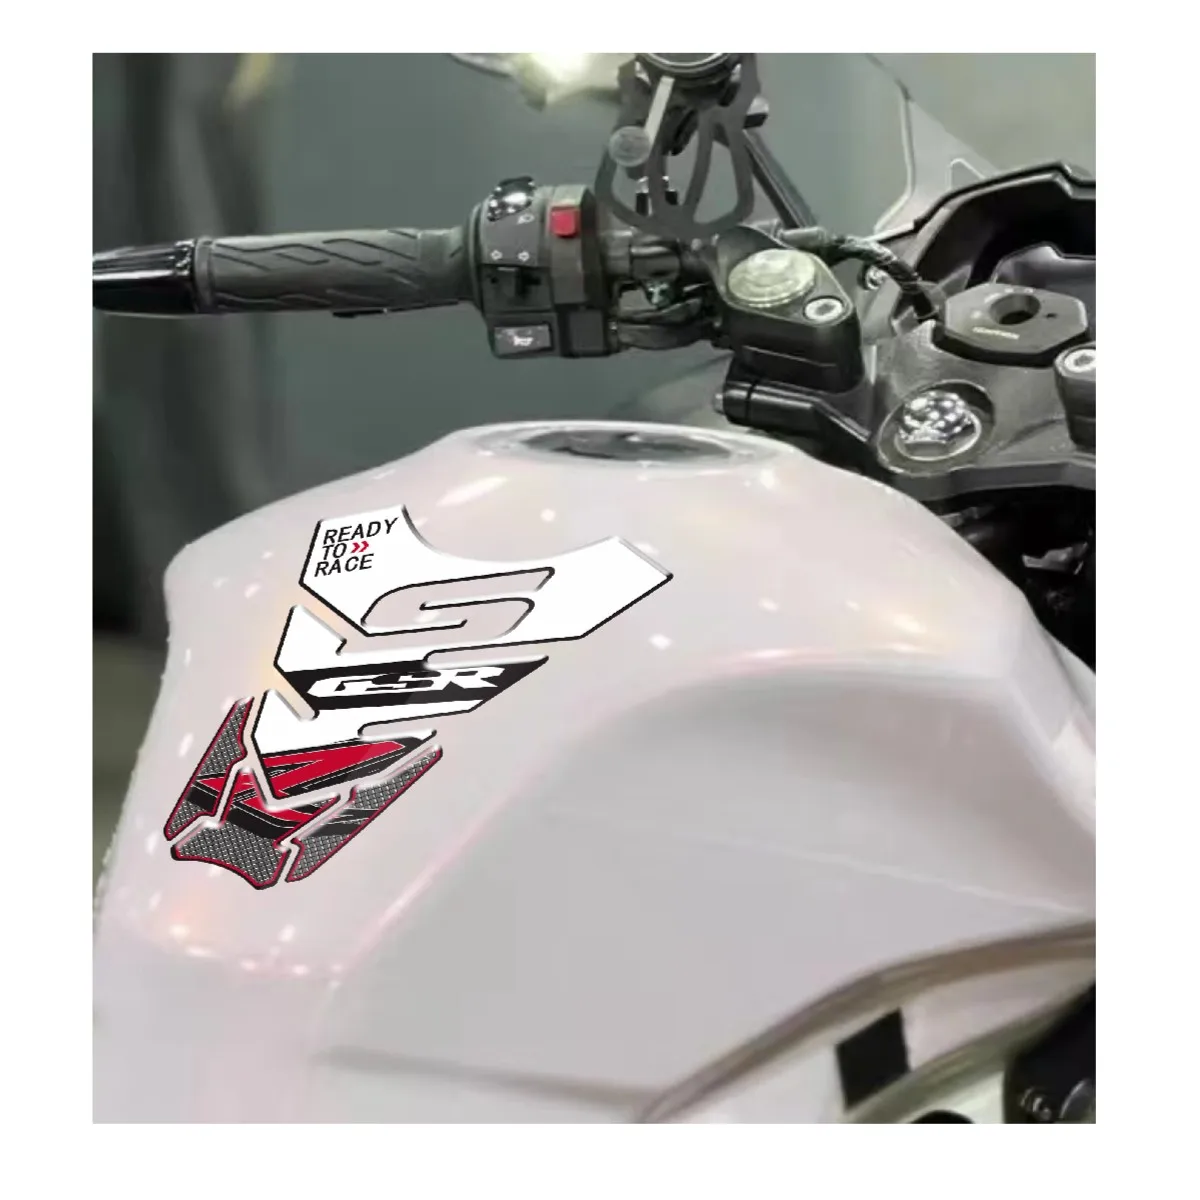 3D Motorcycle Fuel Tank Cap Pad Protector Stickers Decals For SUZUKI GSR250 S F GSR600 GSR750 GSR400 GSR1000